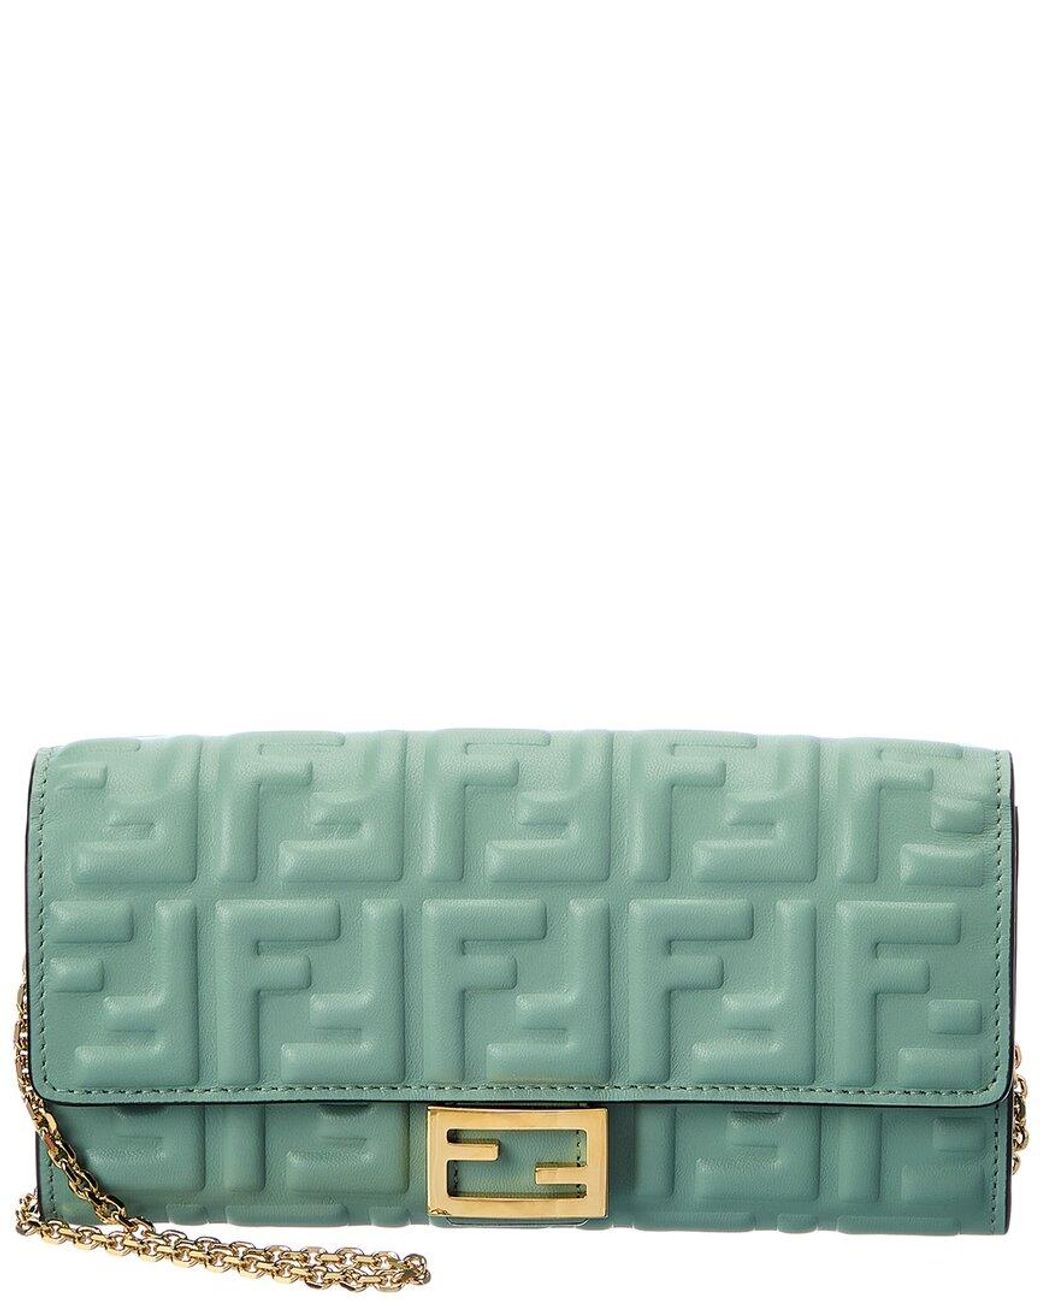 Fendi Baguette Leather Wallet On Chain in Green | Lyst